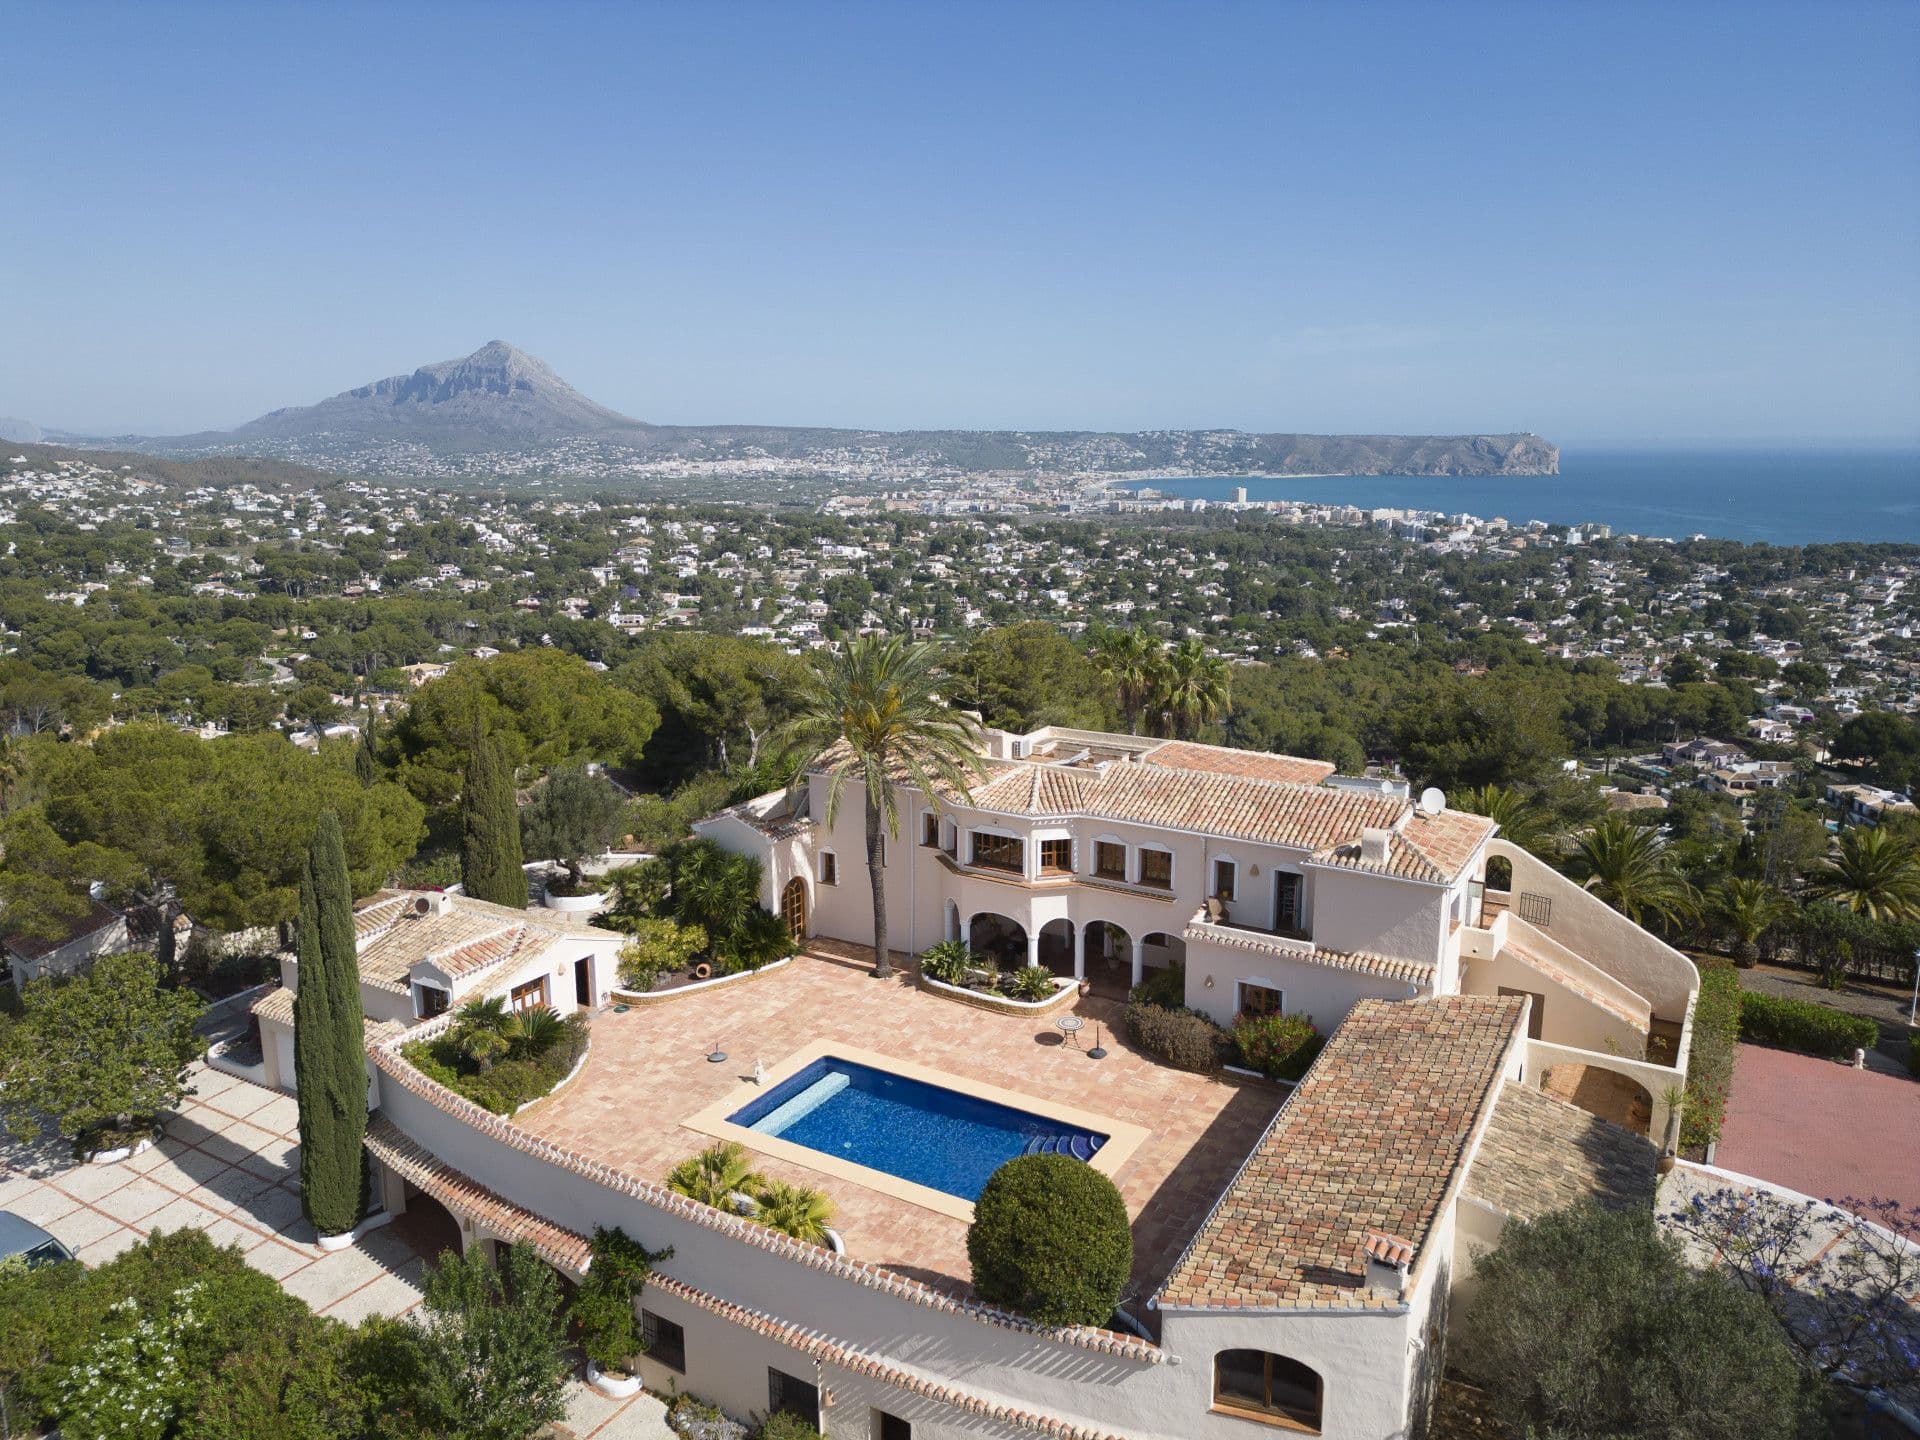 Excepcional propiedad con unas maravillosas vistas al mar, al valle y la montaña en Jávea (Alicante)